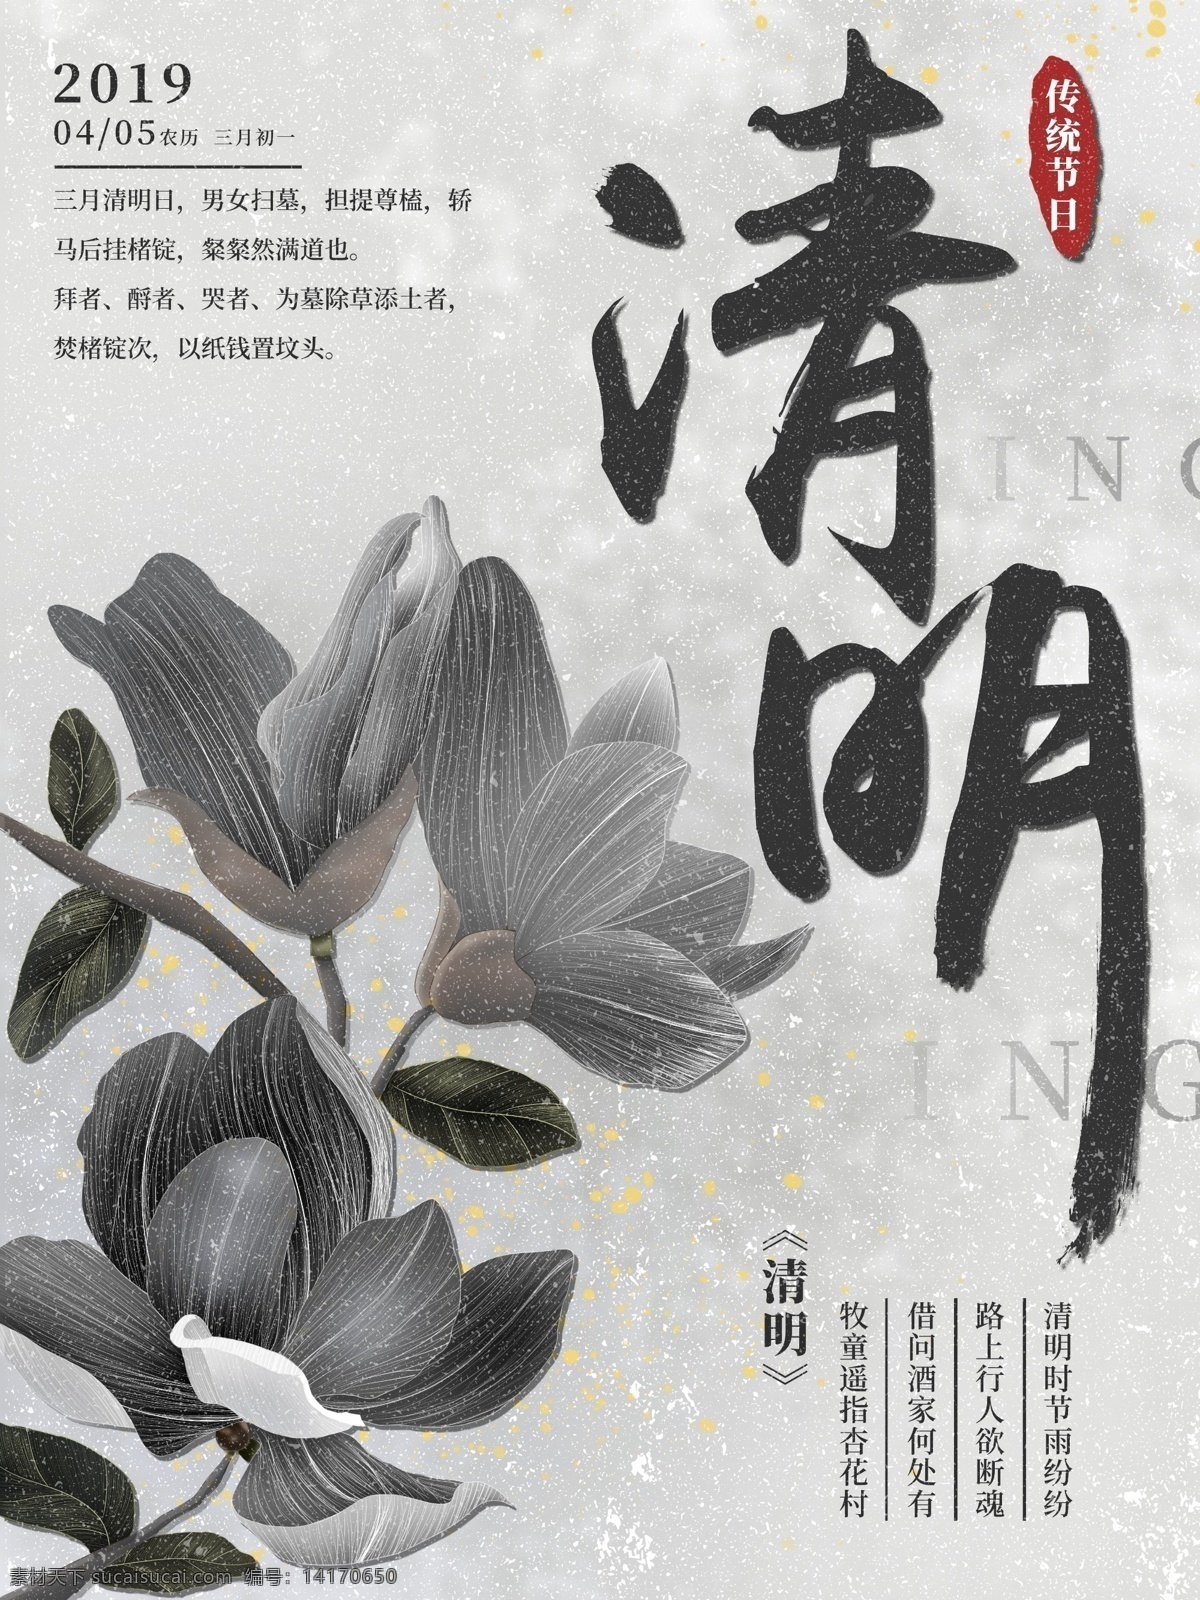 原创 手绘 复古 风 清明节 节日 宣传海报 中国风 简约风 踏青 黑白 中国传统 宣传 海报 花朵